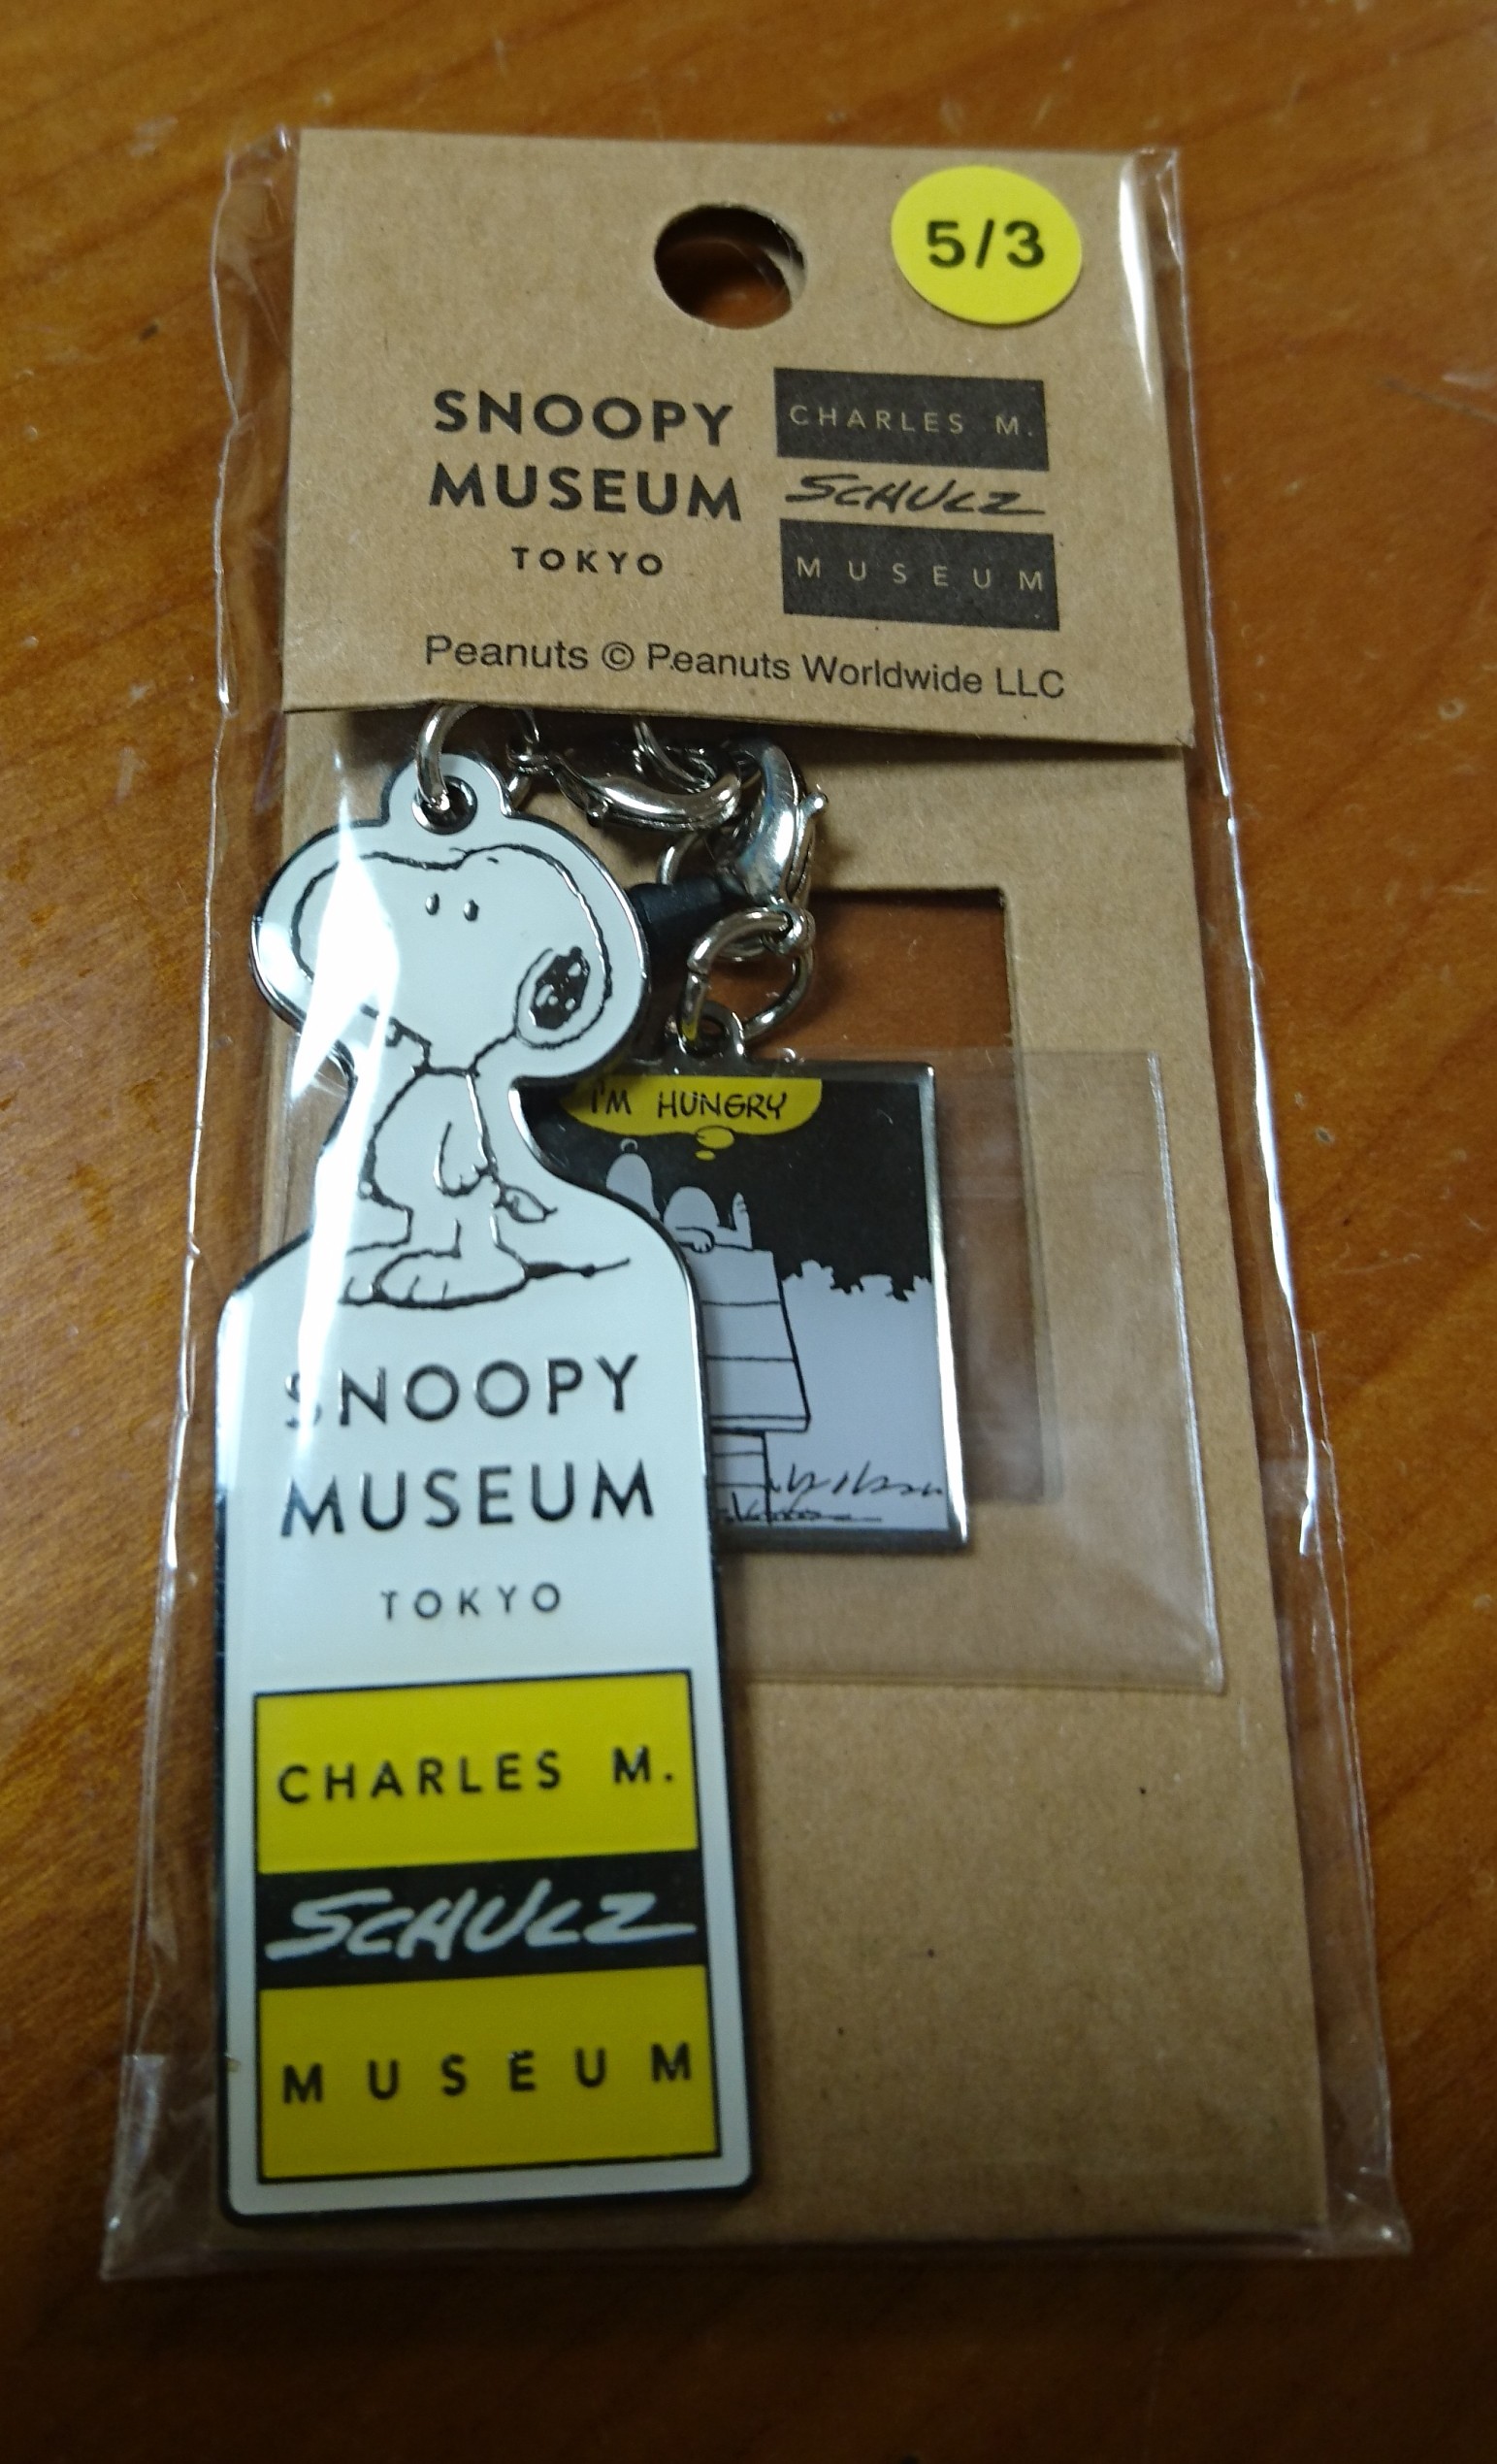 Snoopy Museum Tokyo スヌーピーミュージアム 第1回展 愛しのピーナッツ へ 冥王星へ連れてって